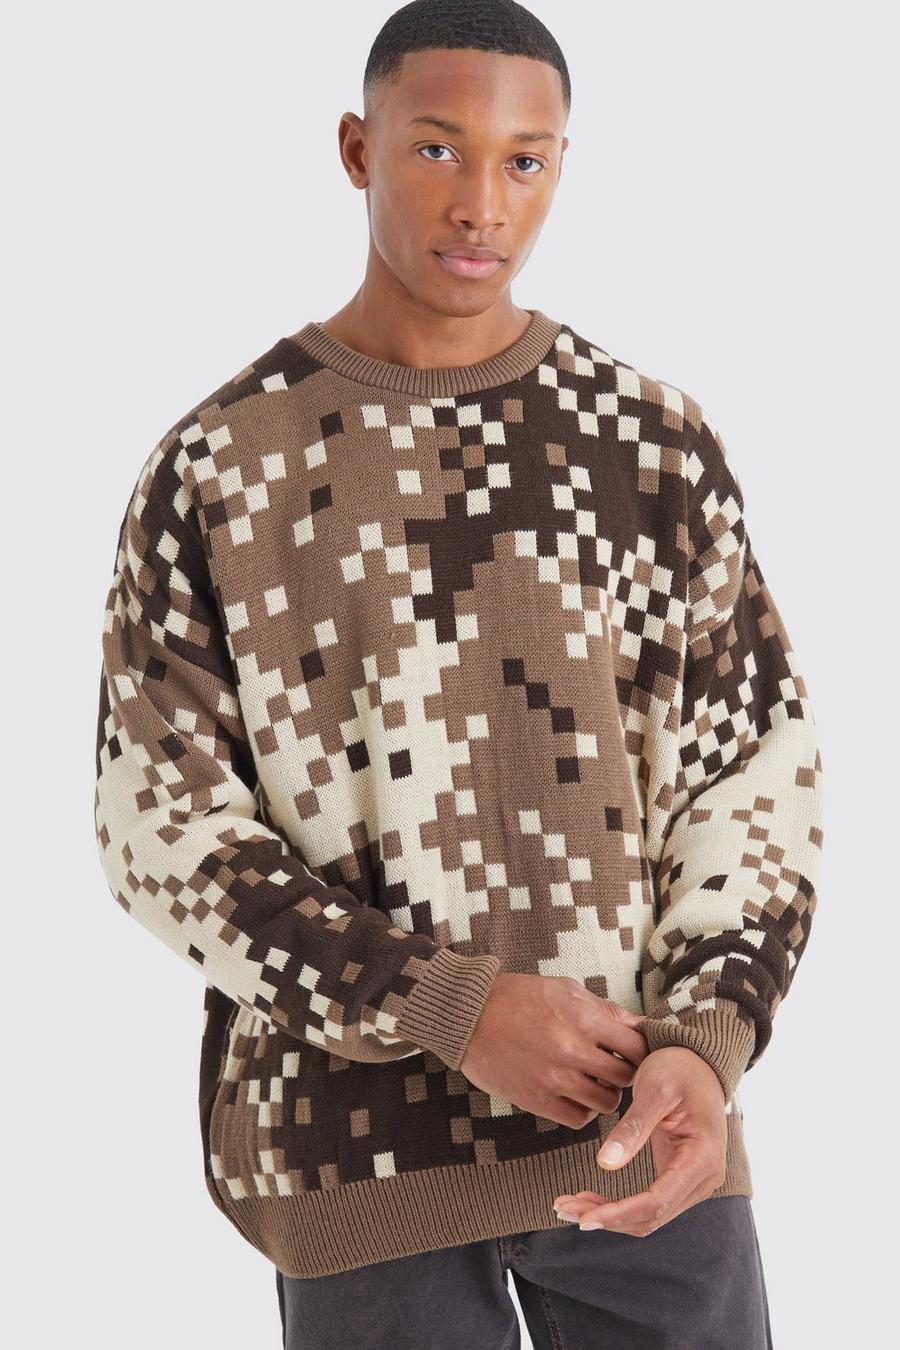 Maglione oversize in maglia in fantasia militare pixelata, Chocolate